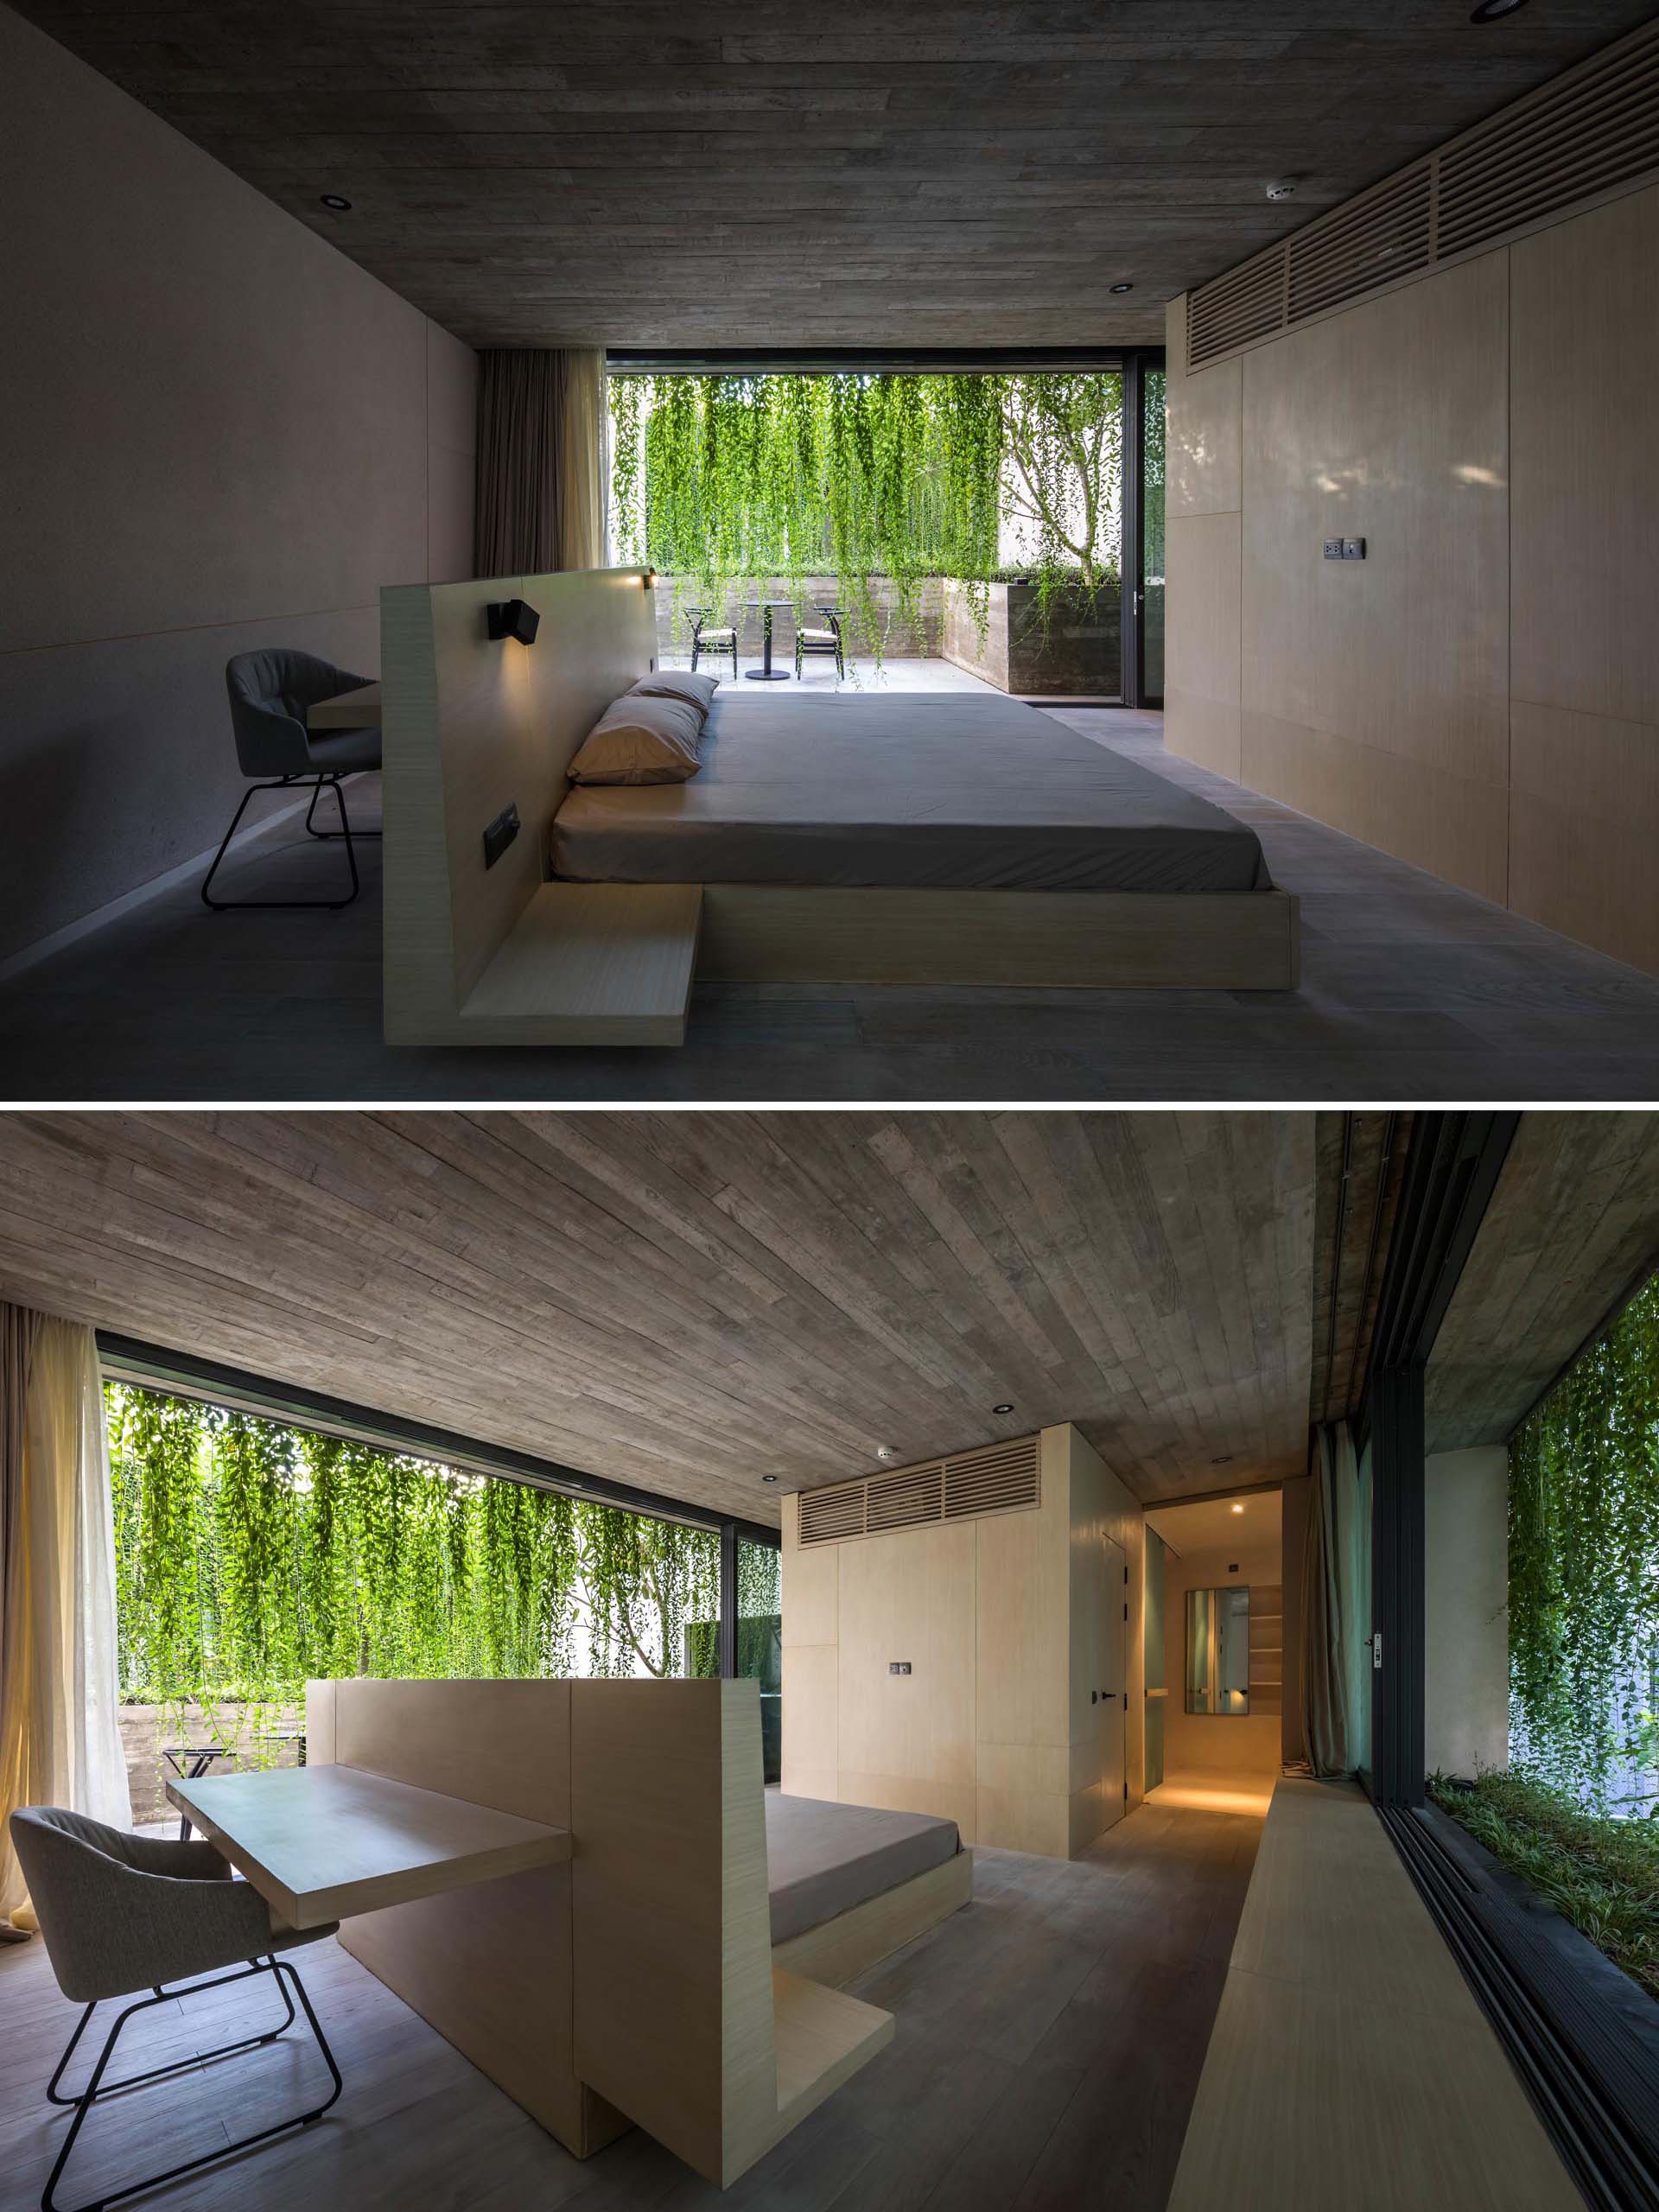 Спальня в стиле минимализма с бетонными стенами и каркасом кровати с письменным столом за изголовьем.